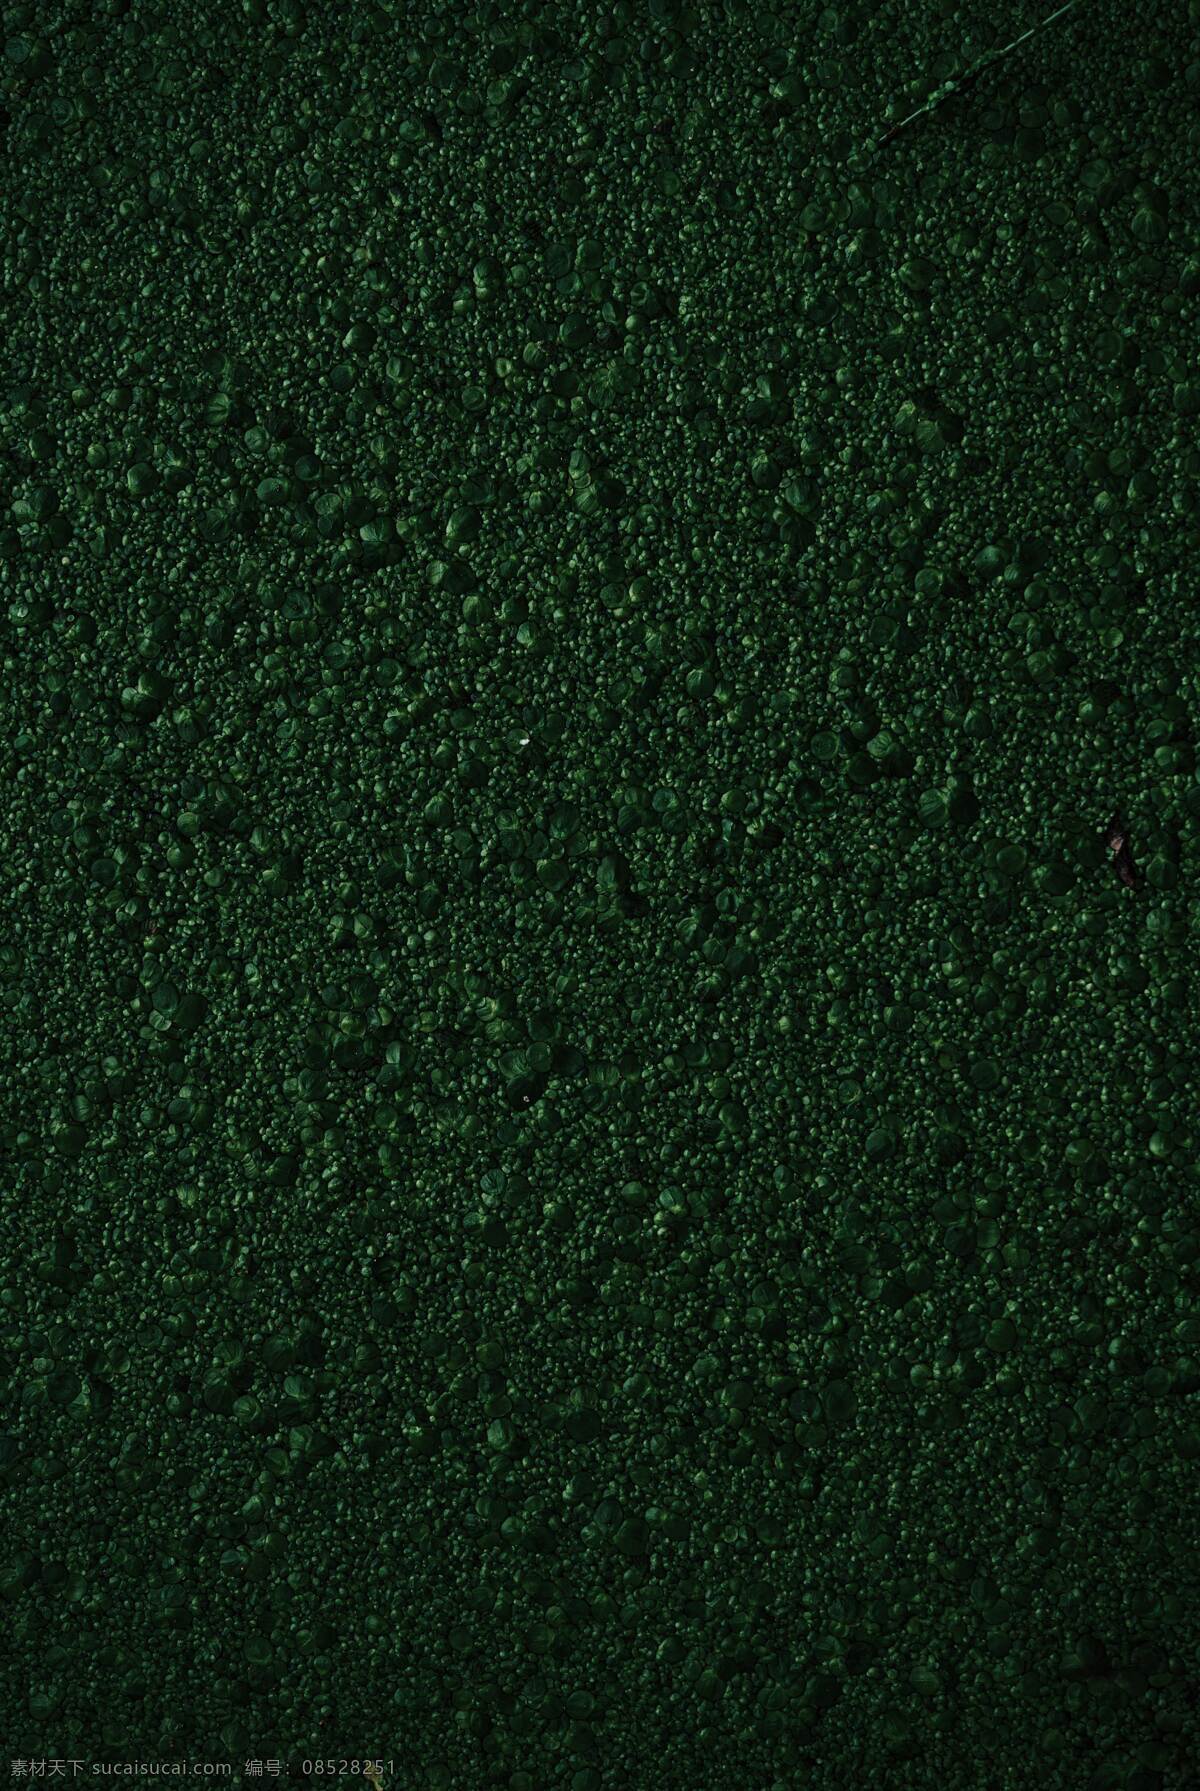 斑驳背景 背景 绿色 斑驳 纹理 粗糙 斑驳素材 生活百科 生活素材